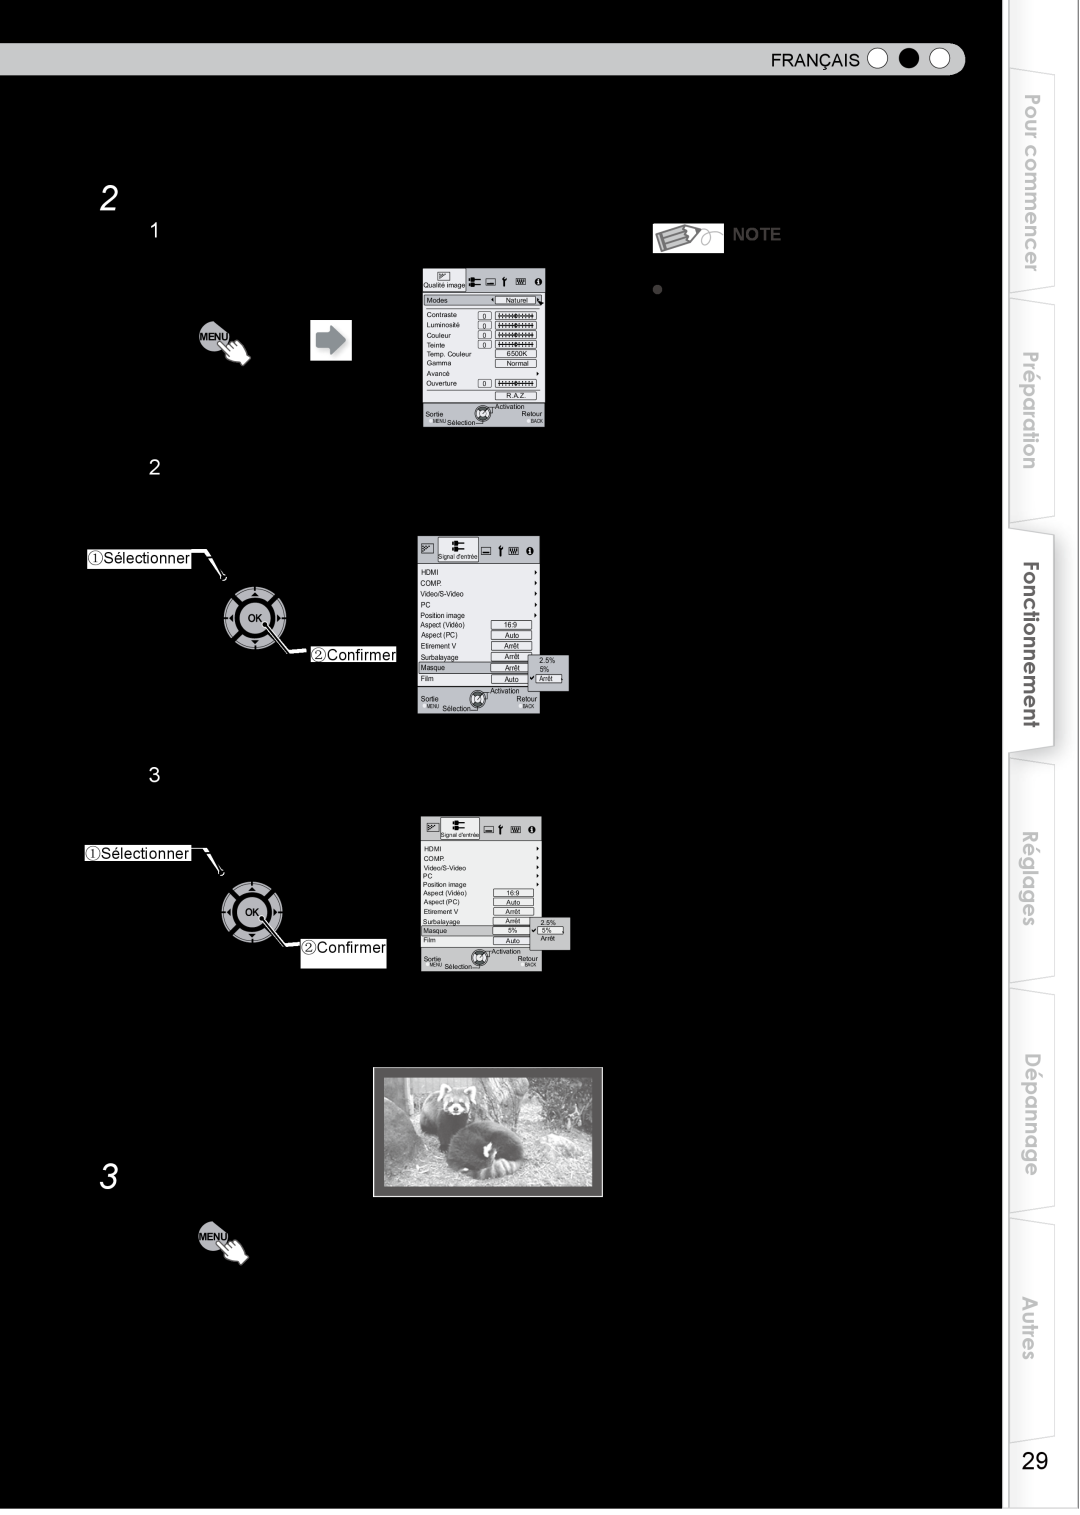 JVC DLA-HD750 Masquer l’image, Pour terminer, Affichez le menu de configuration, Choisissez “Signal dentrée” “Masque” 